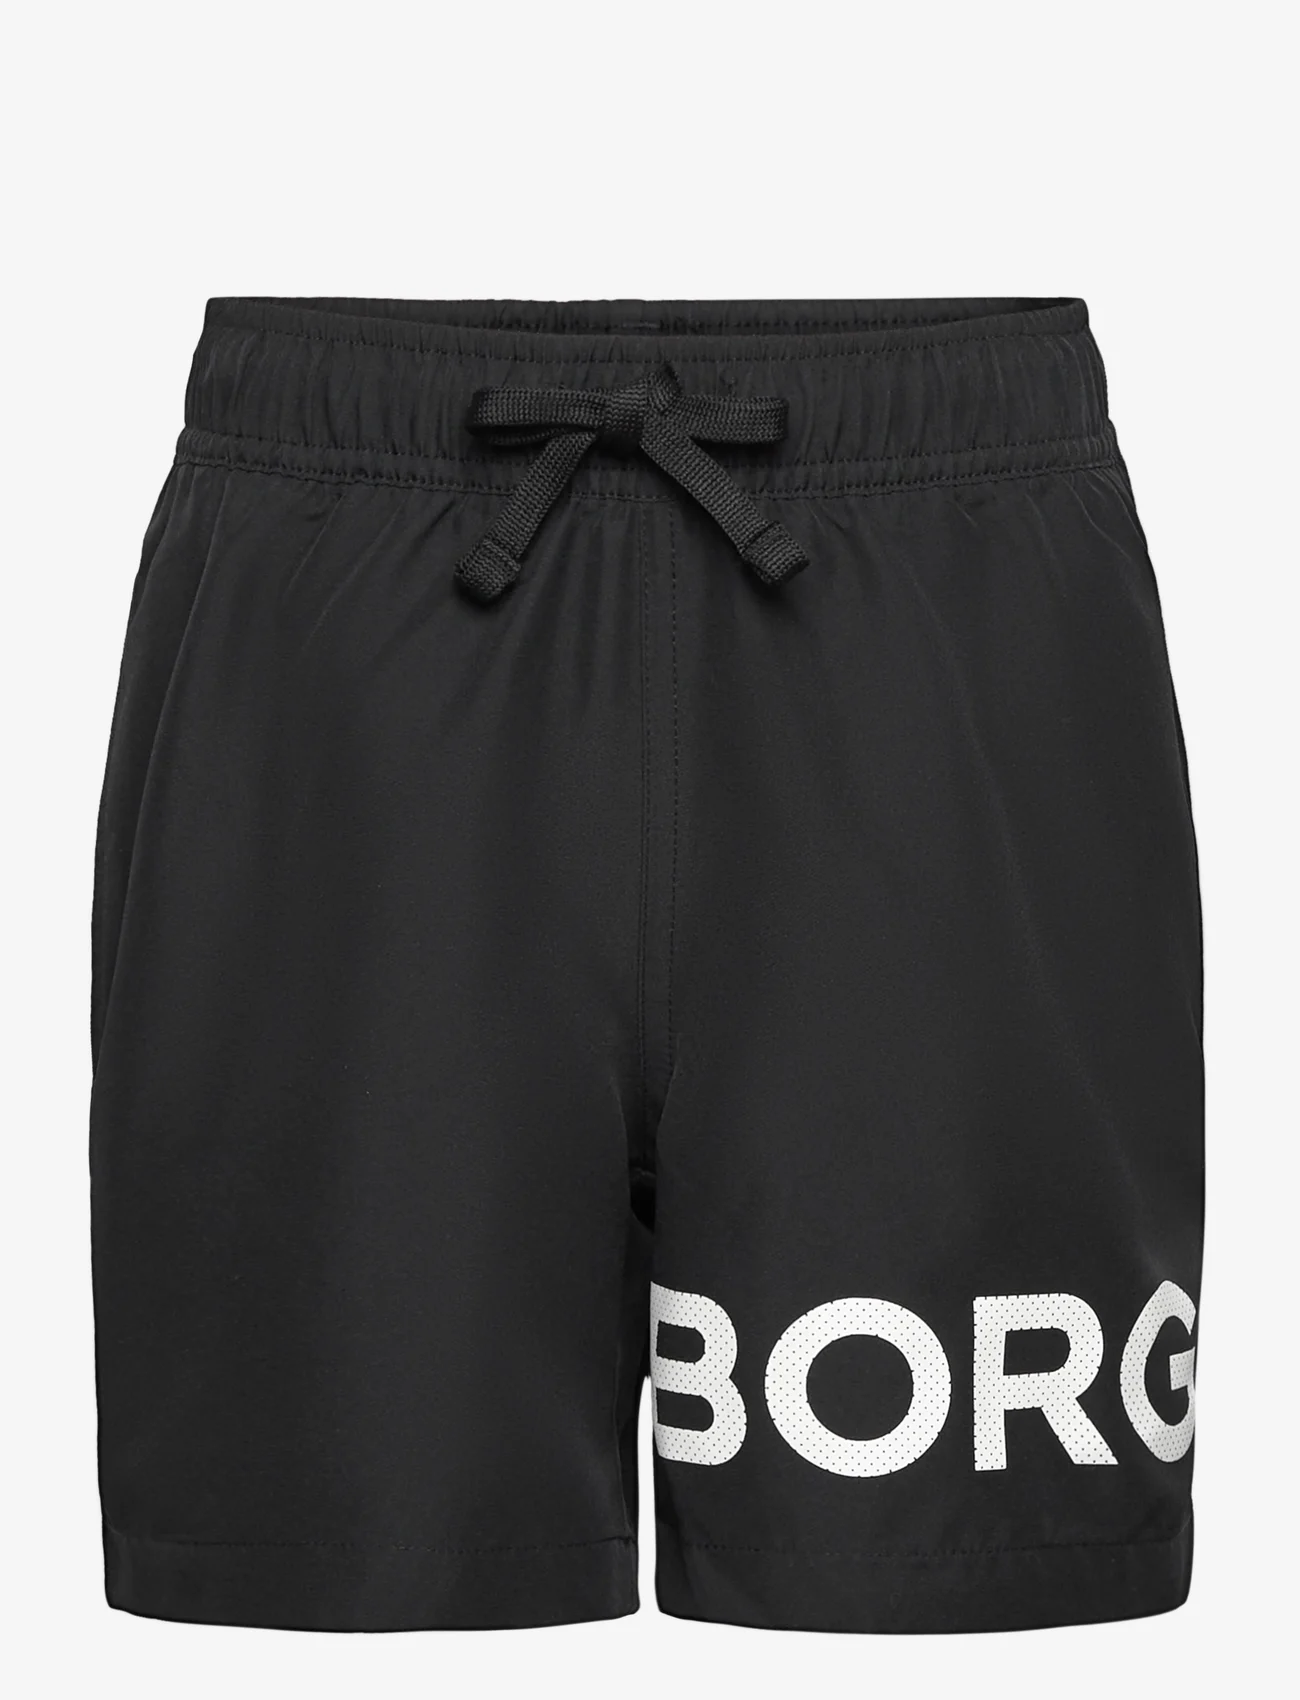 Björn Borg - BORG SWIM SHORTS - gode sommertilbud - black beauty - 0